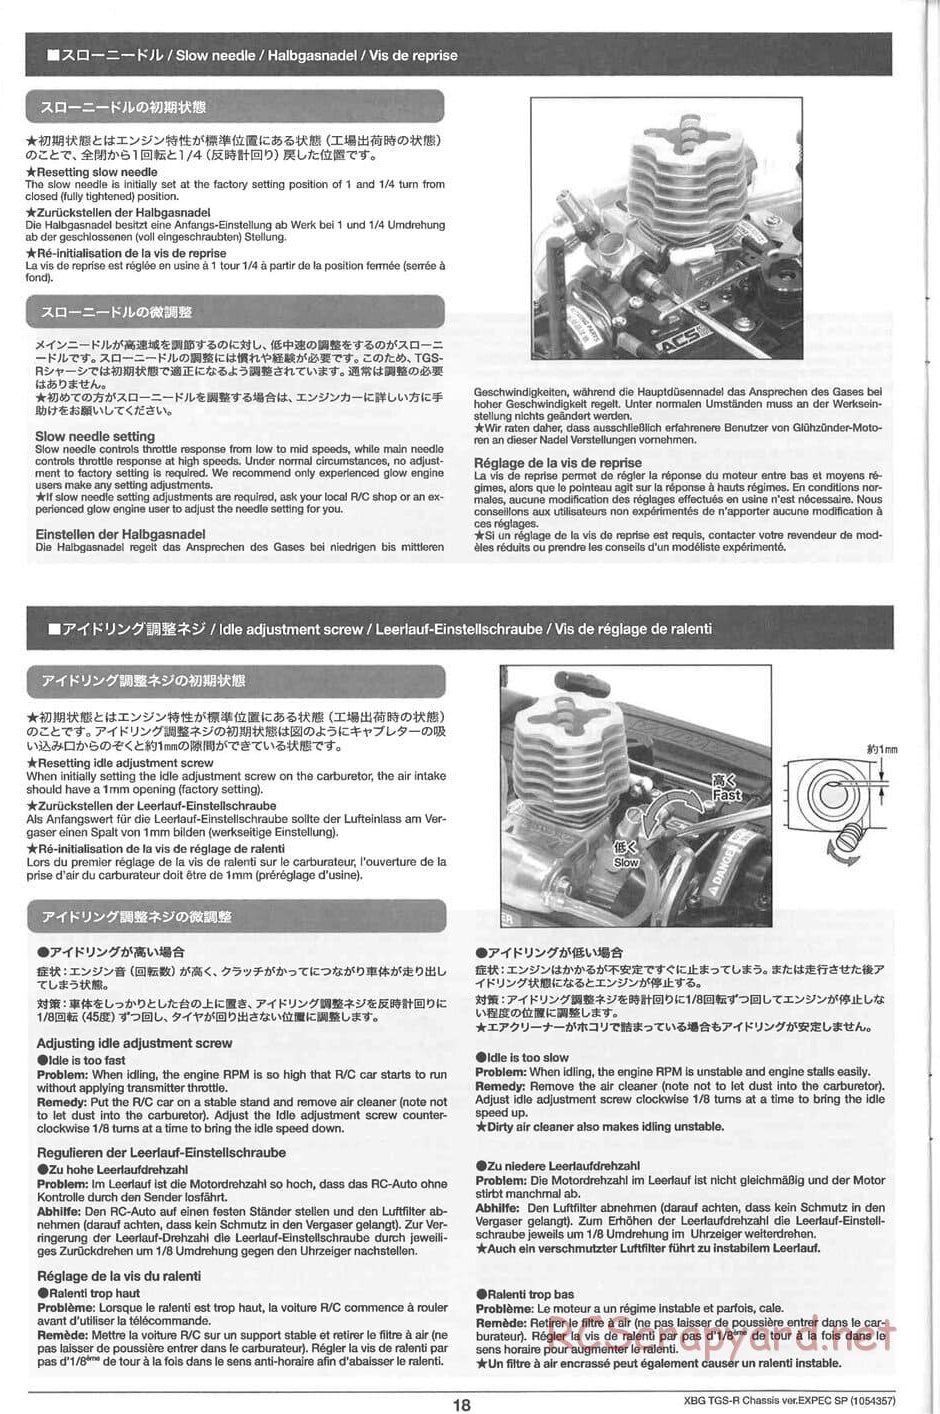 Tamiya - TGS-R Chassis - Manual - Page 18